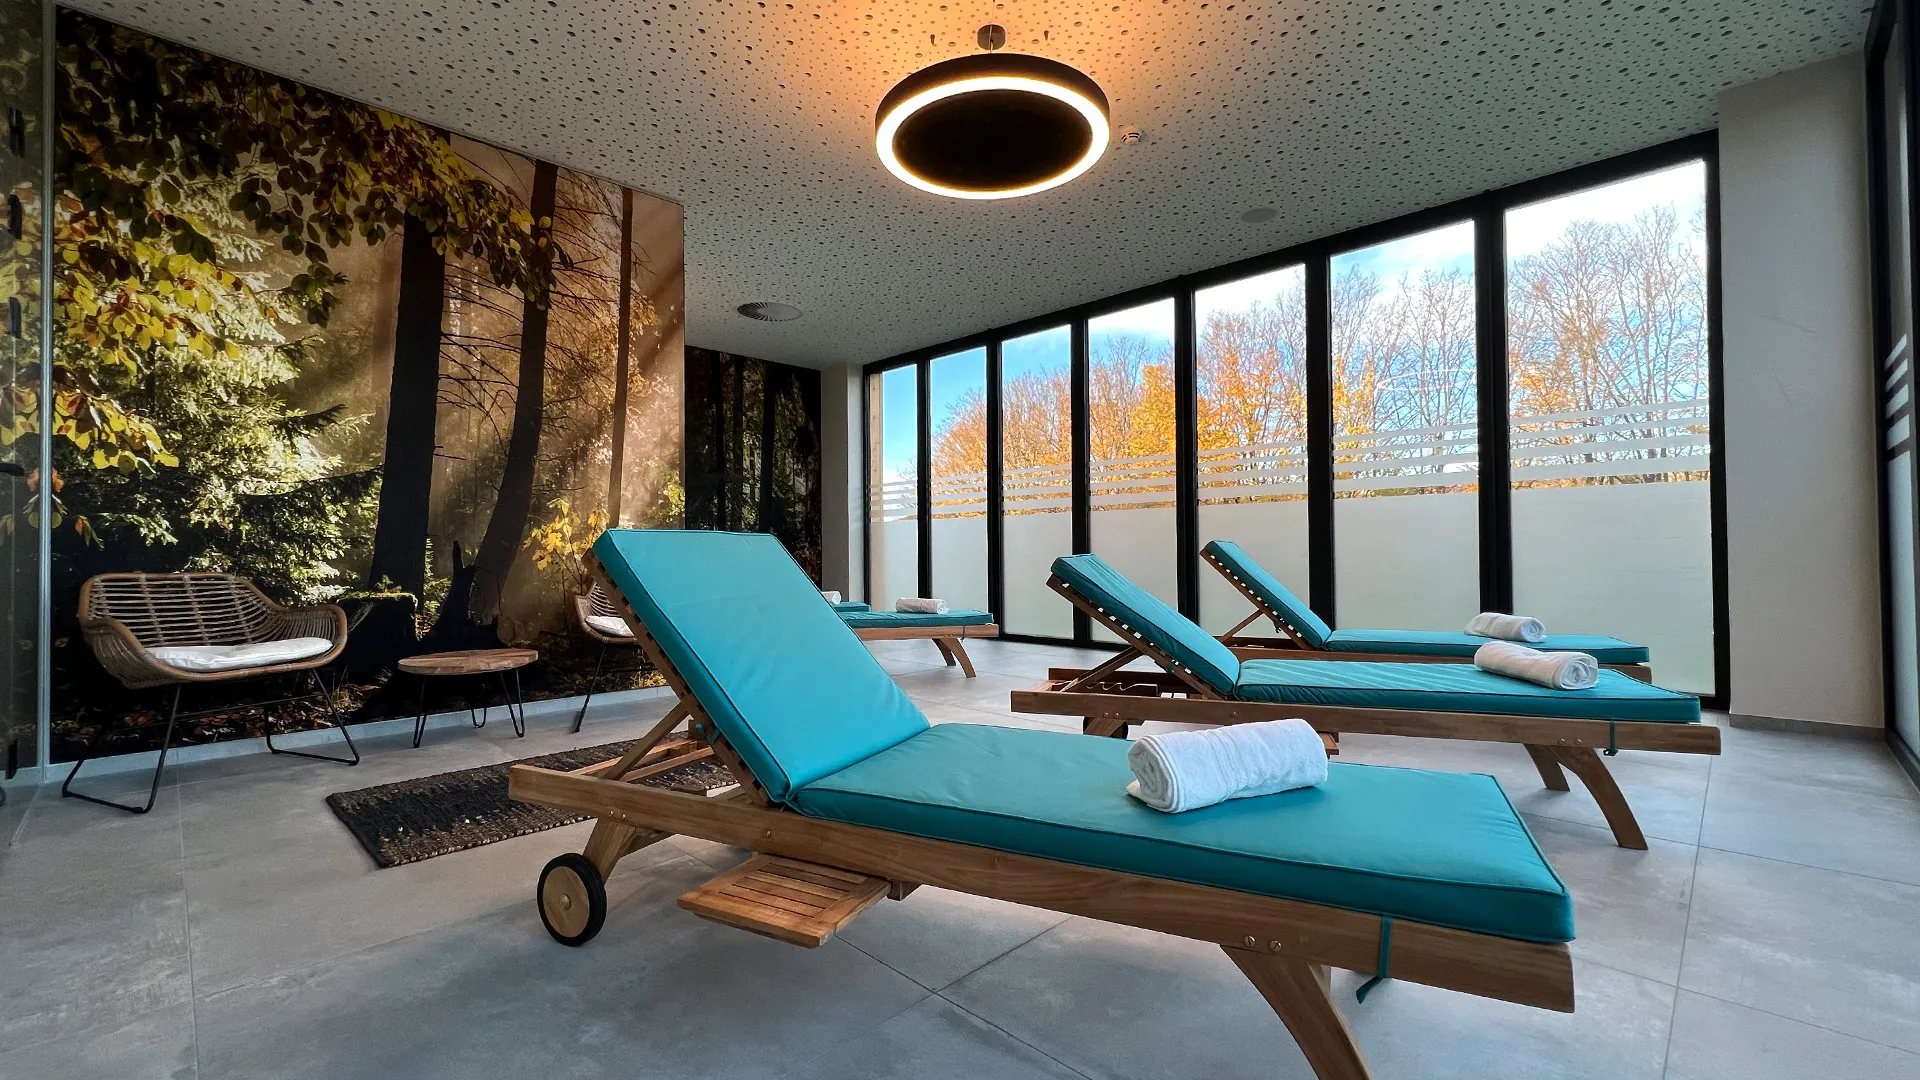 Ein heller, moderner Raum mit großen Fenstern und Wald Tapete mit bequemen Relay Liegen mit Türkise Auflage.